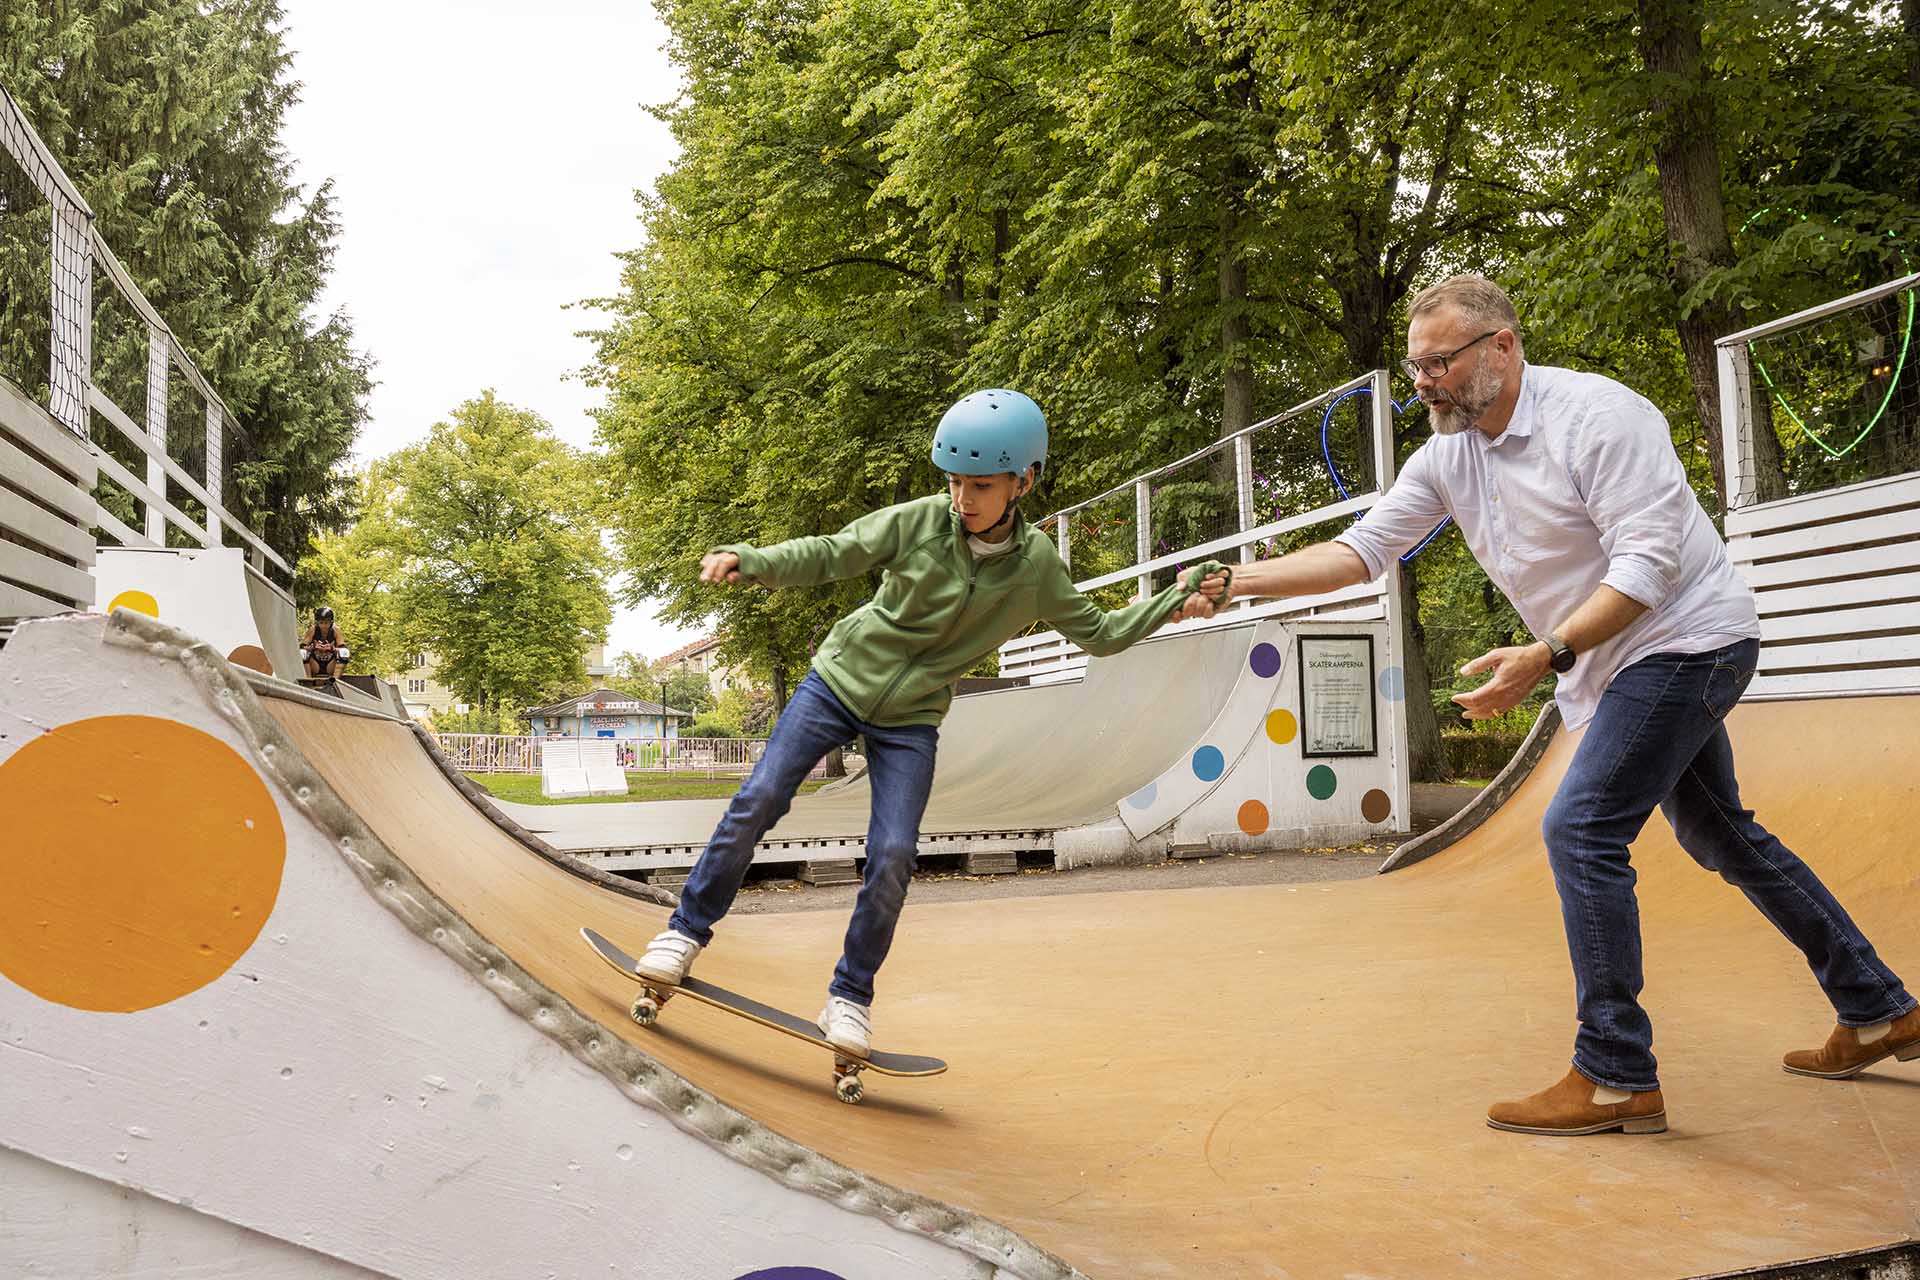 A man helps a boy skateboard in an outdoor ramp